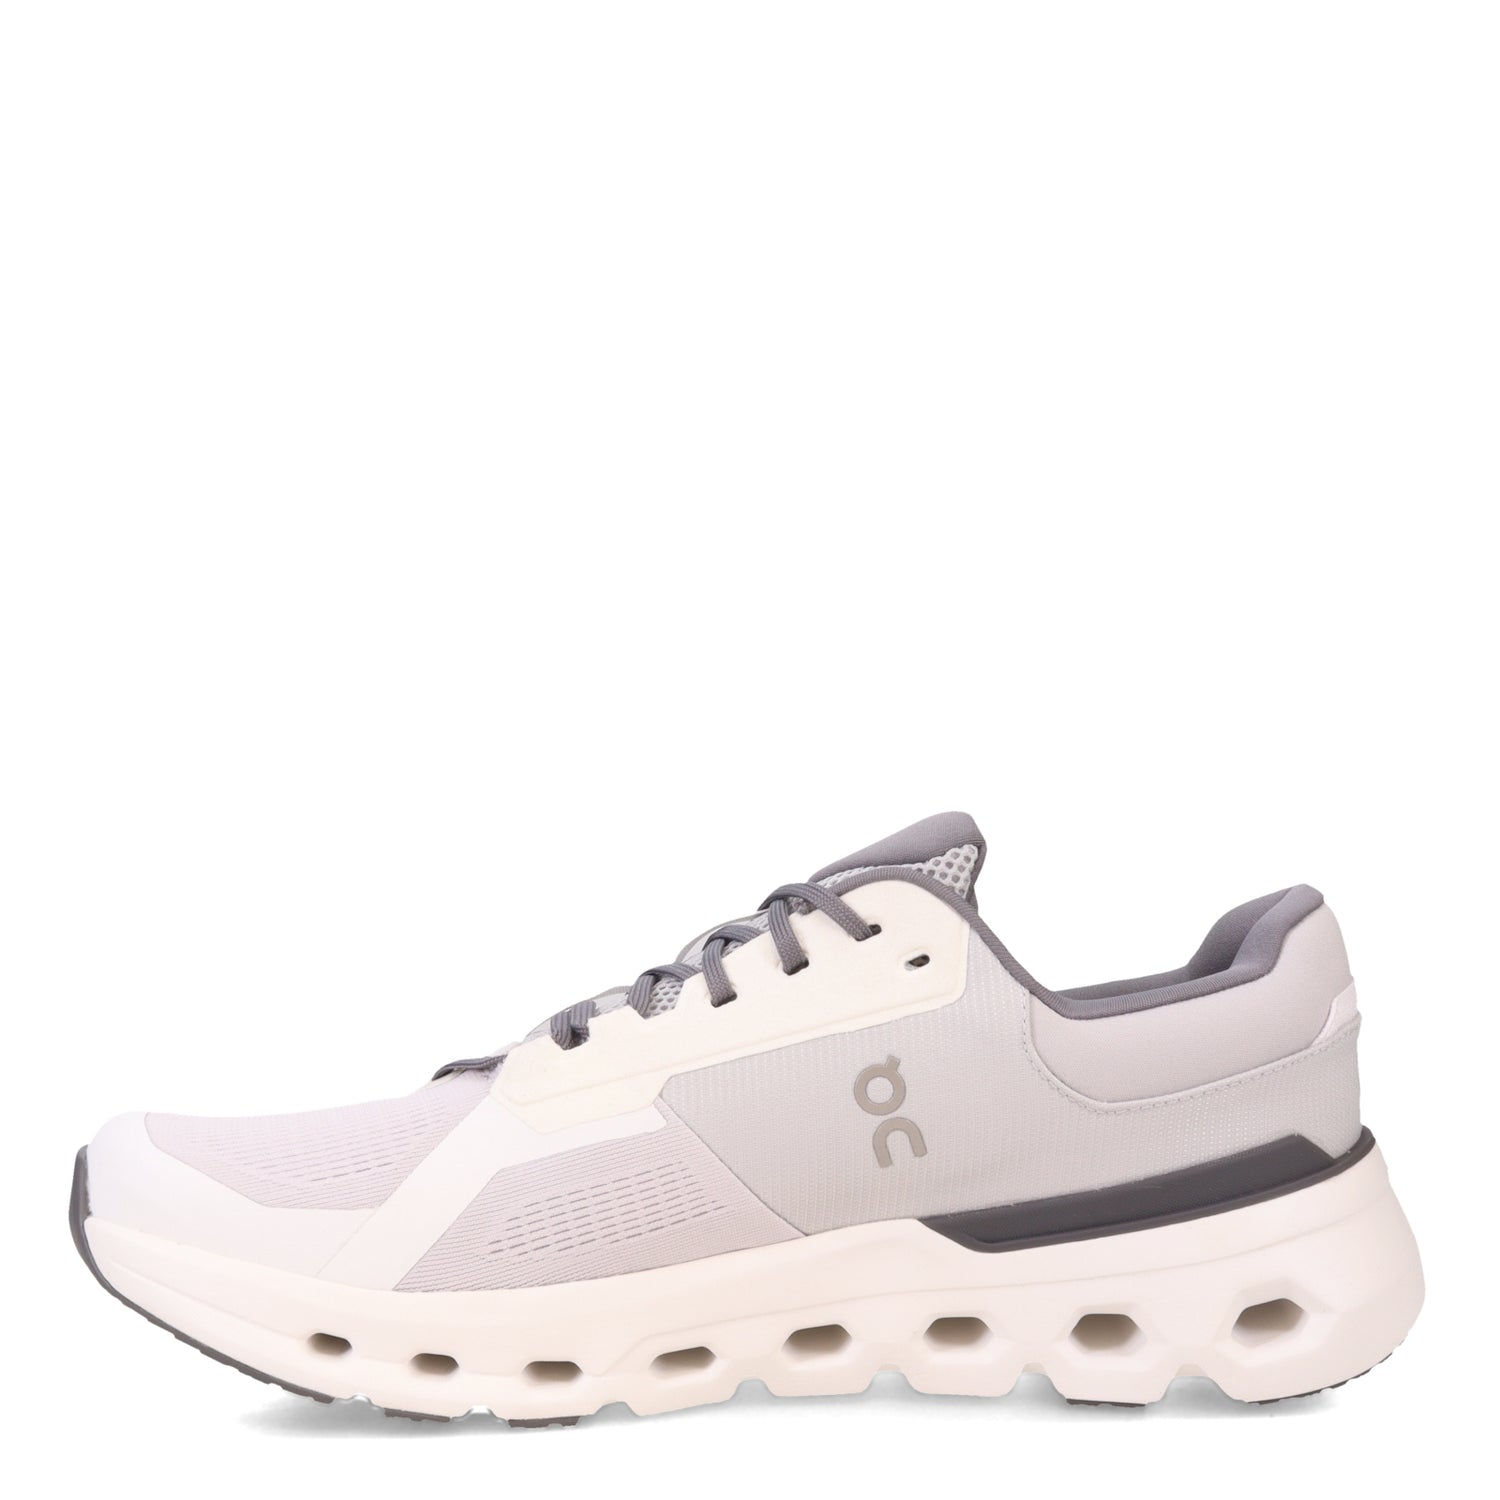 Peltz Shoes  Men's ON Running CloudRunner 2 Running Shoe Frost/White 3ME10140622